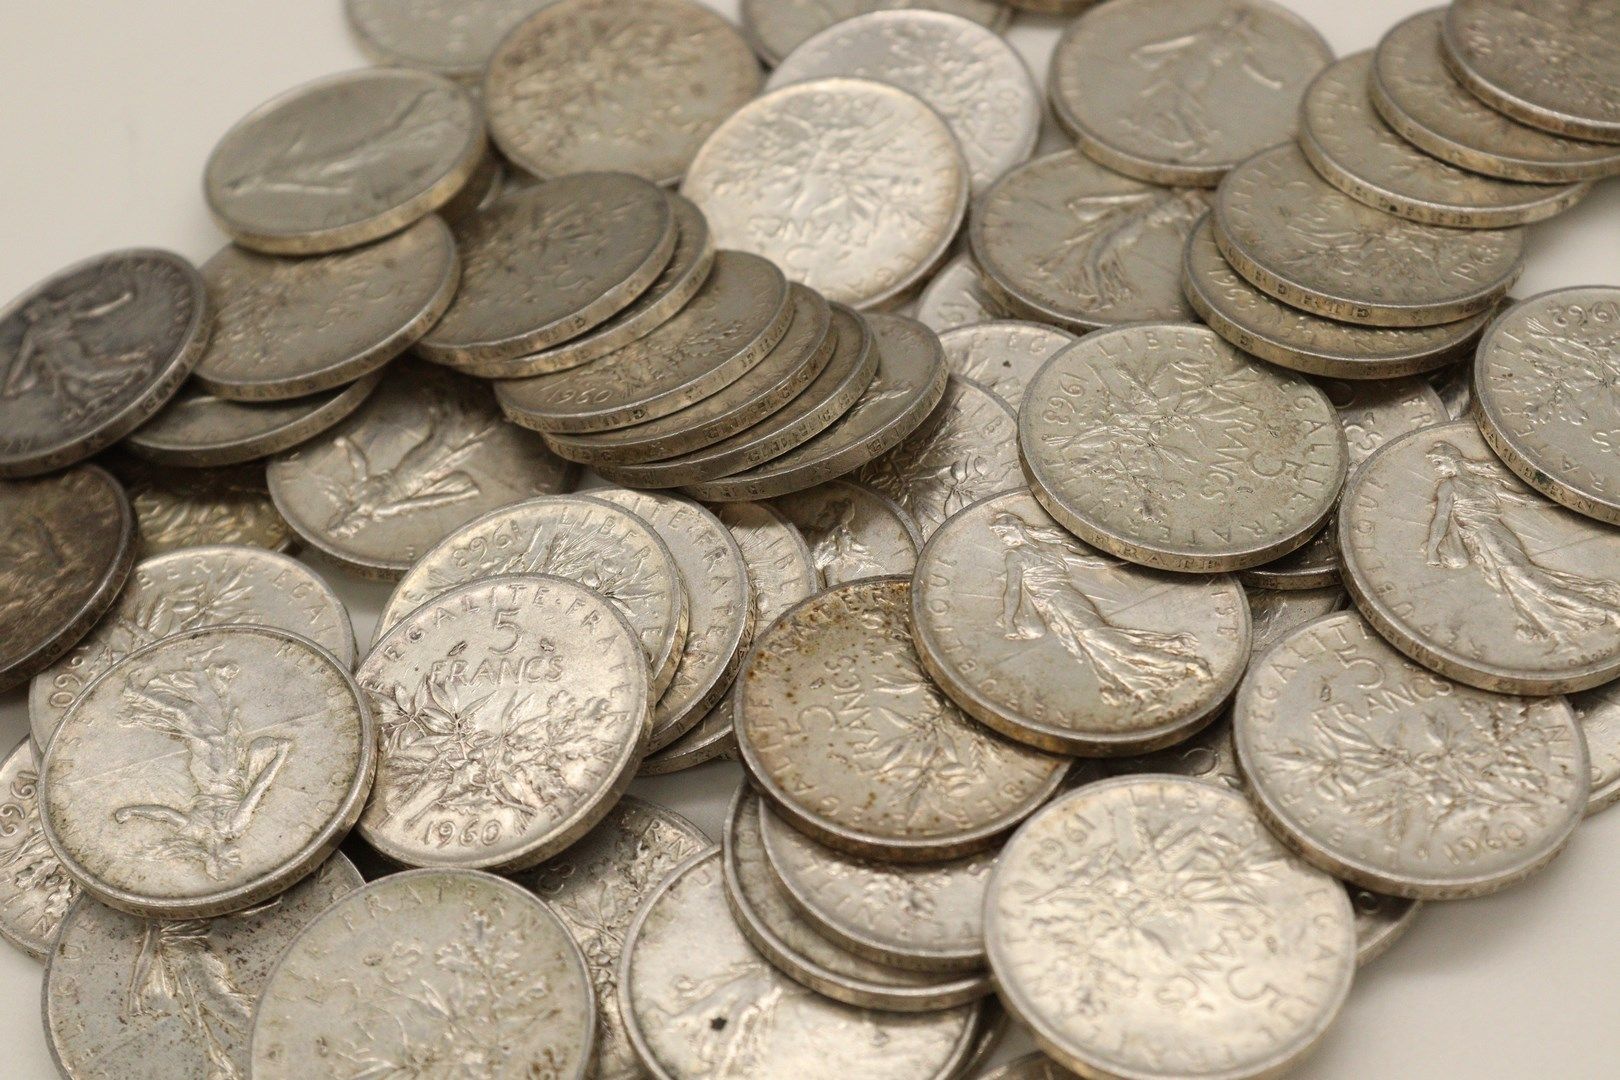 Null 1960年x34, 1961年x9, 1962年x20, 1963年x14的5法郎Semeuse银币拍品。

重量 : 929.00g